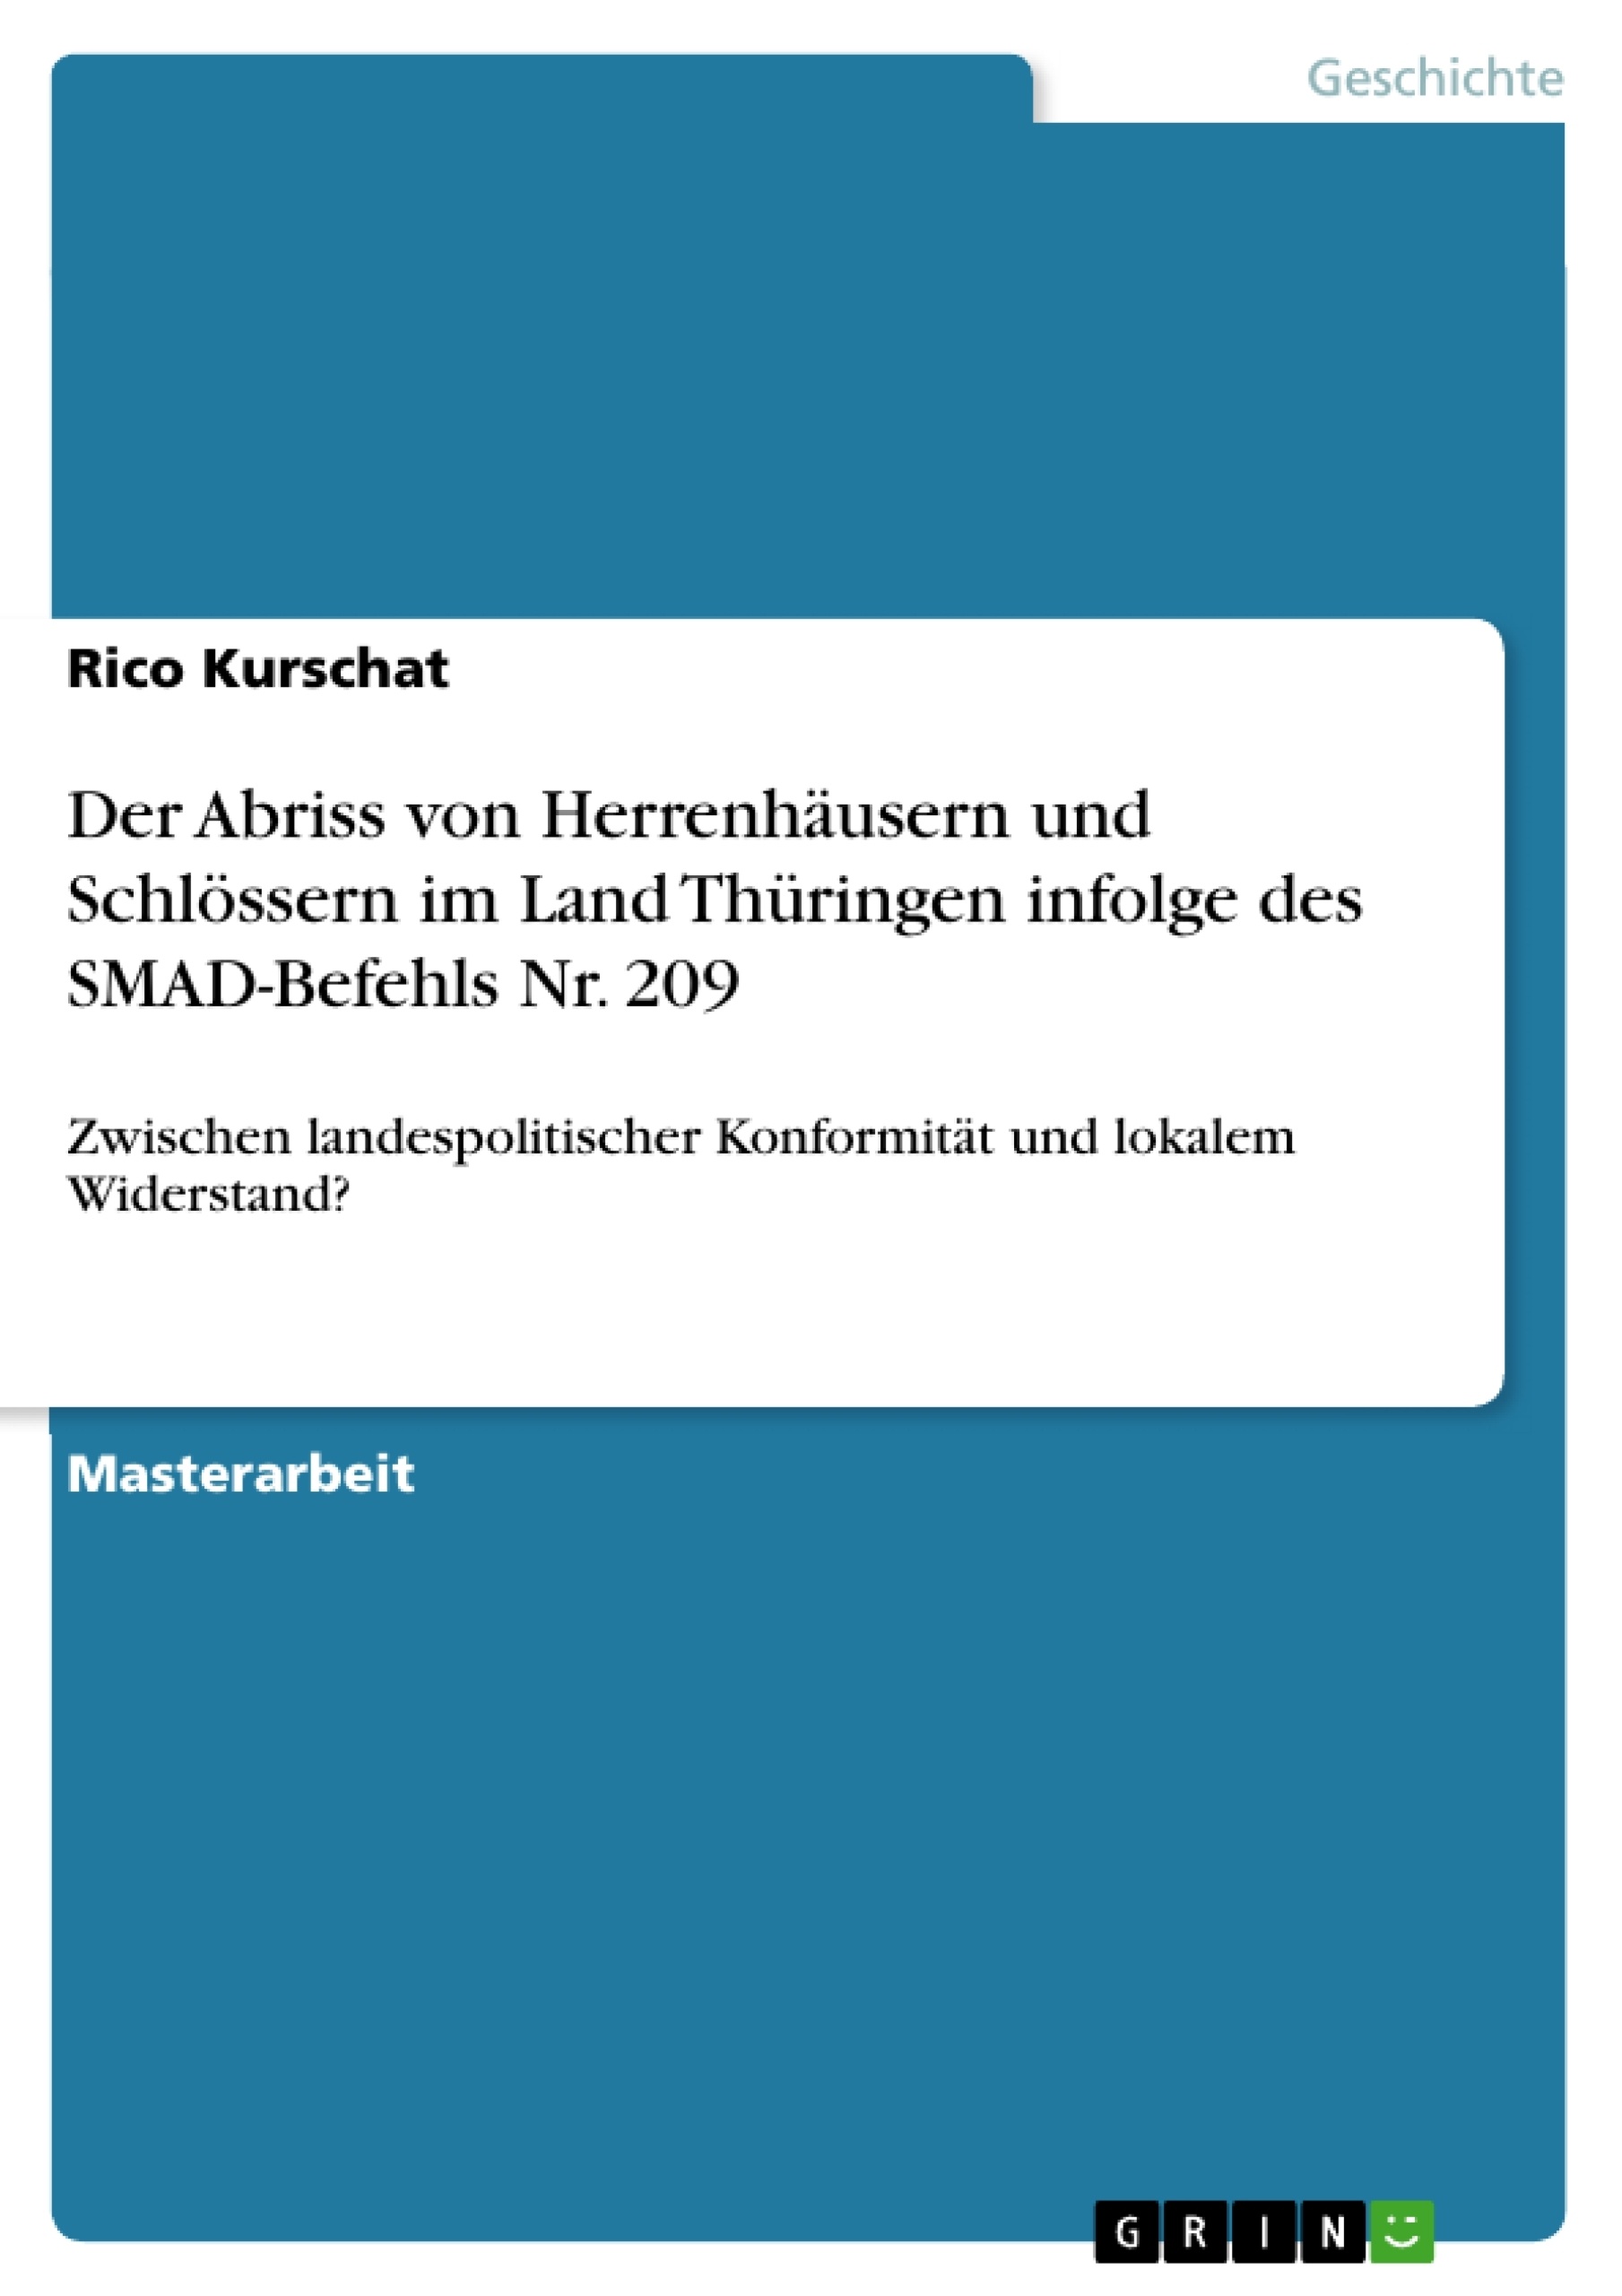 Title: Der Abriss von Herrenhäusern und Schlössern im Land Thüringen infolge des SMAD-Befehls Nr. 209